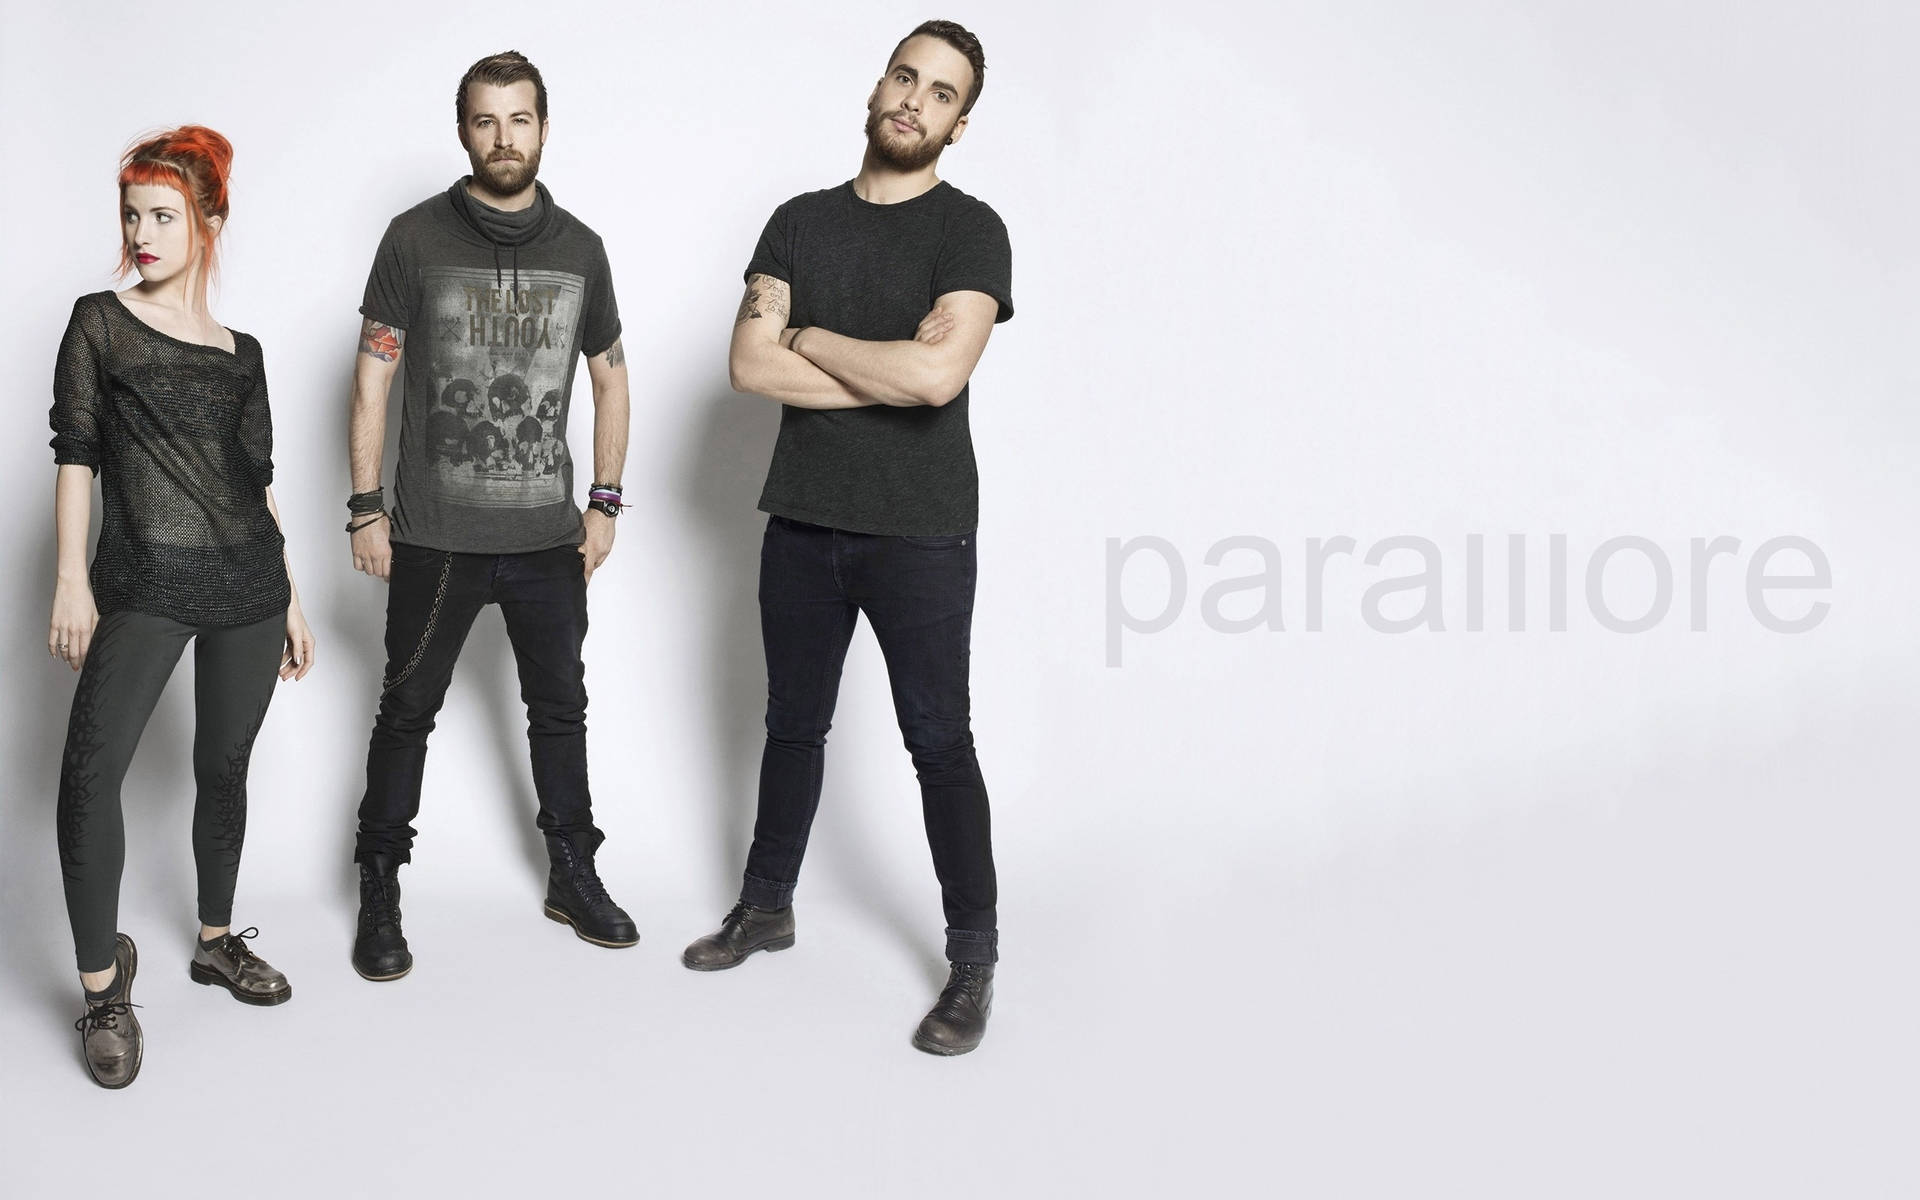 Paramoretrio-band Wallpaper